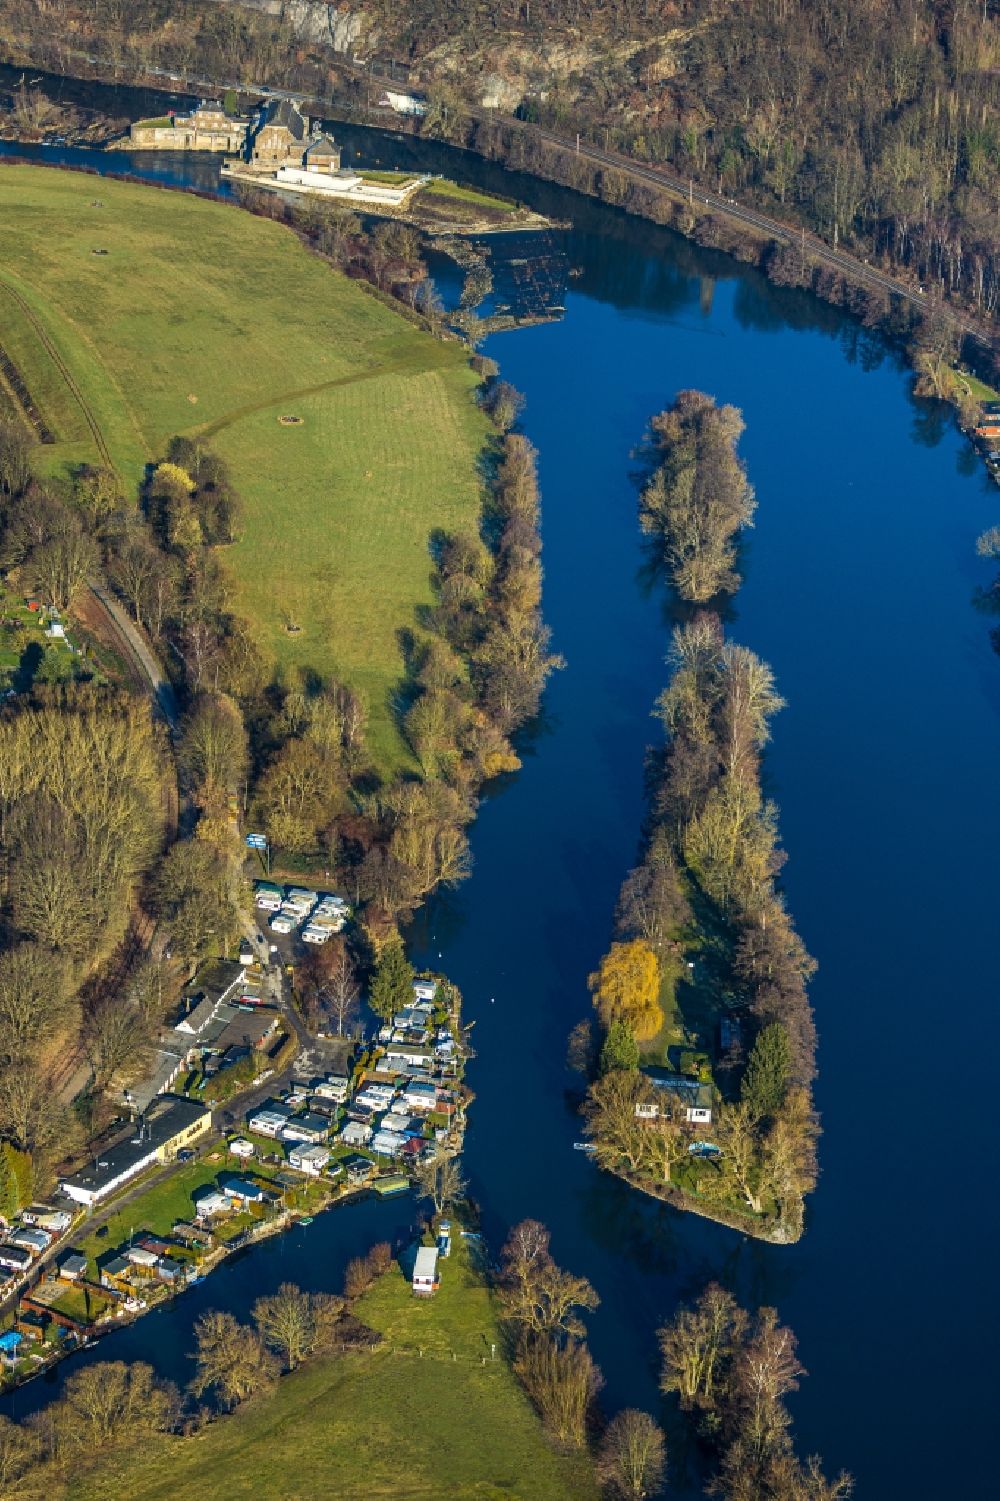 Witten von oben - Insel am Ufer des Flußverlaufes der Ruhr mit Blick auf einen Campingplatz mit Wohnwagen und Zelten im Ortsteil Bommern in Witten im Bundesland Nordrhein-Westfalen, Deutschland